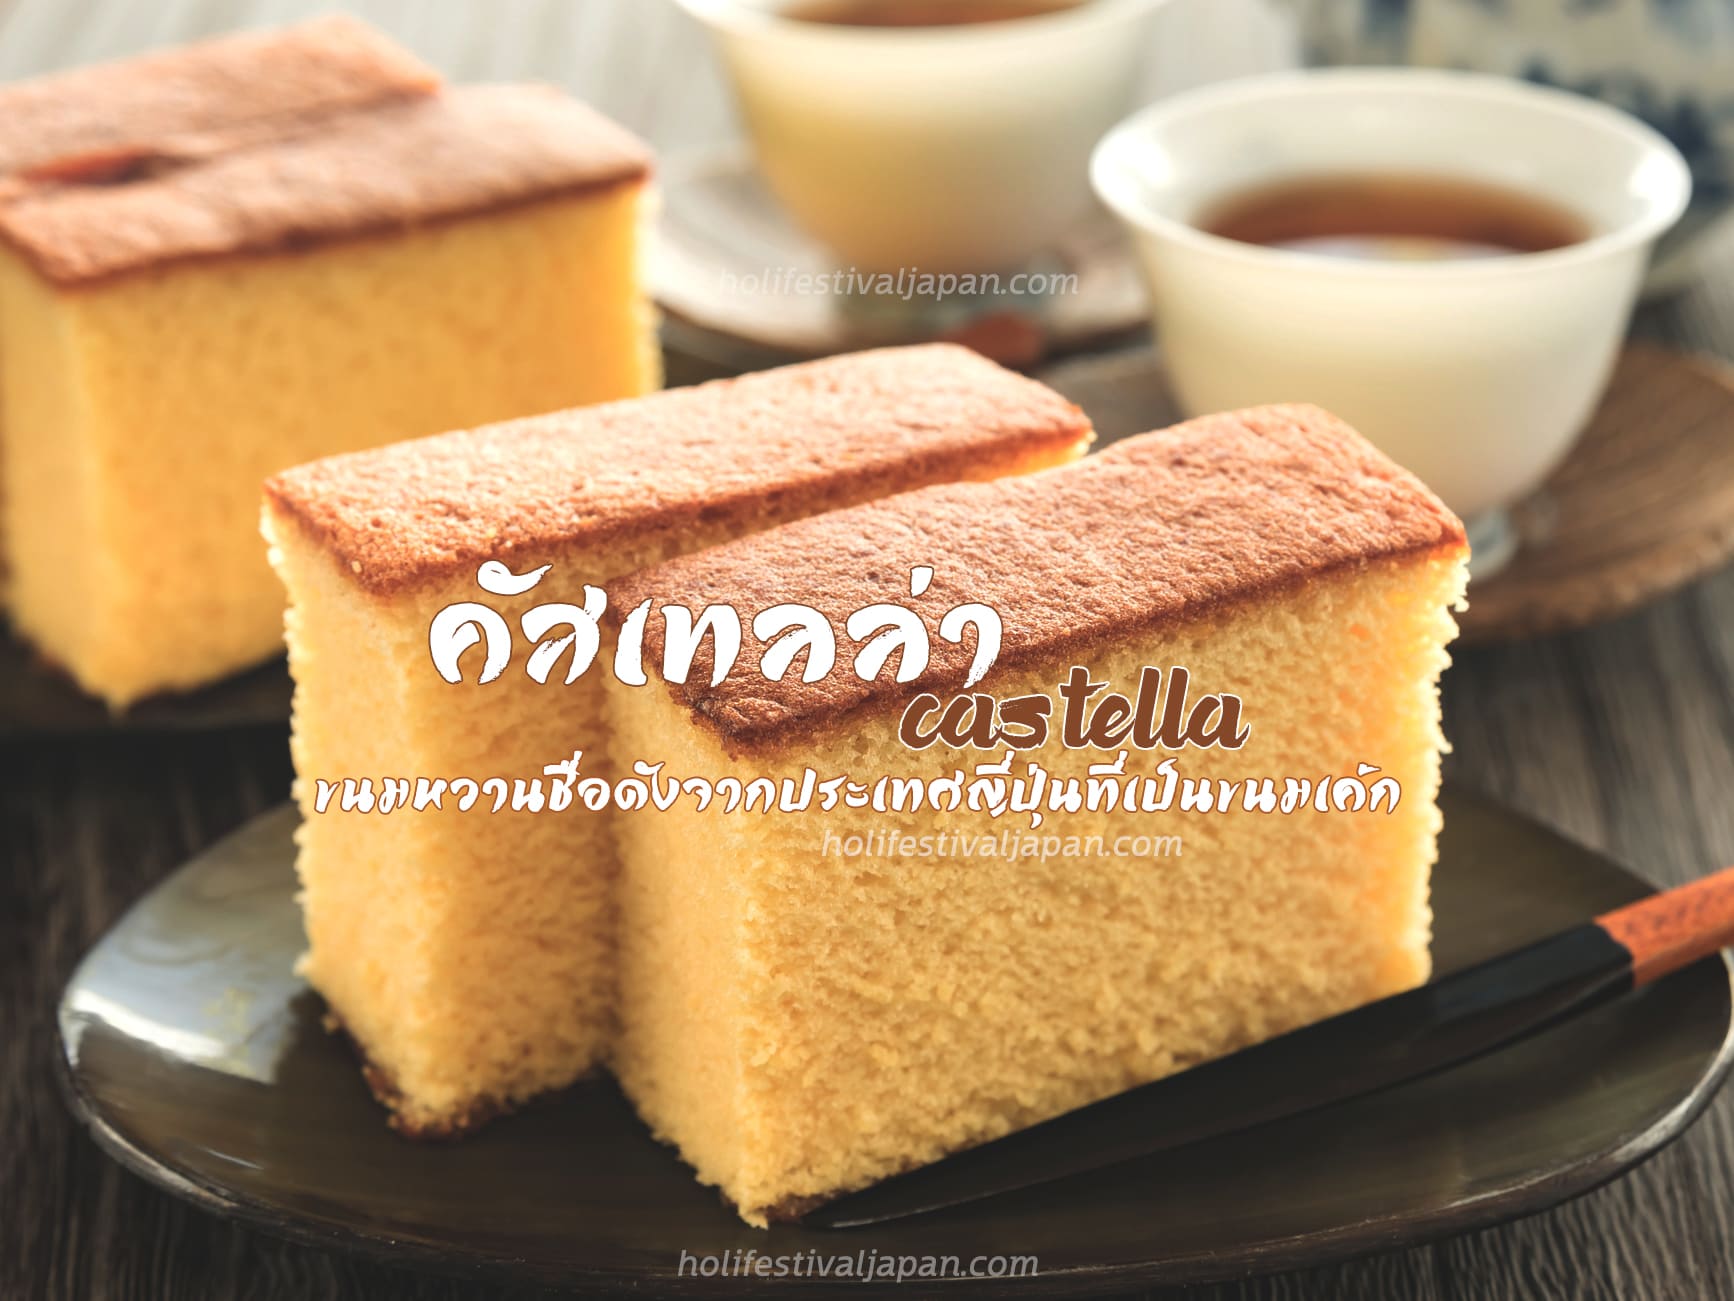 คัสเทลล่า (Castella) ขนมหวานชื่อดังจากประเทศญี่ปุ่นที่เป็นขนมเค้ก